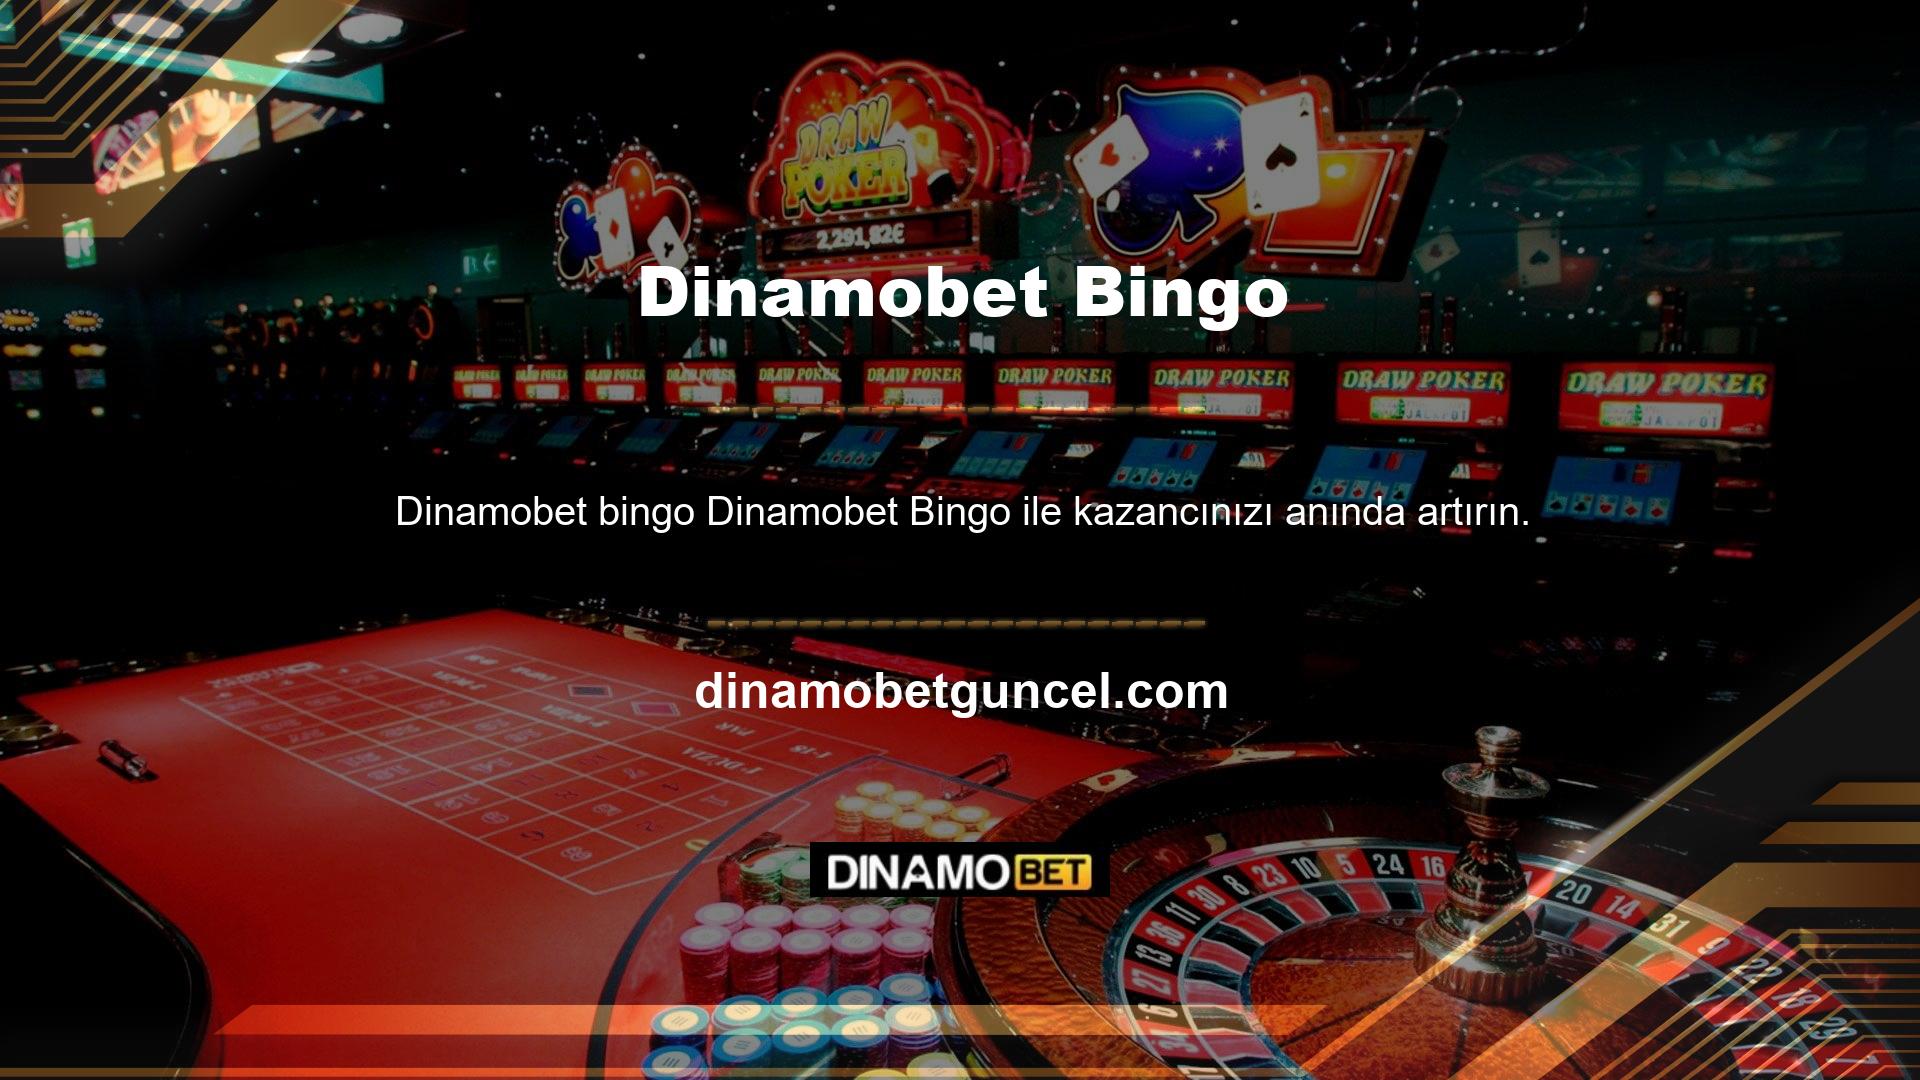 Klasik casino oyunlarından çeşitli spor oyunlarına kadar geniş bir yelpazede sistemimiz mevcuttur